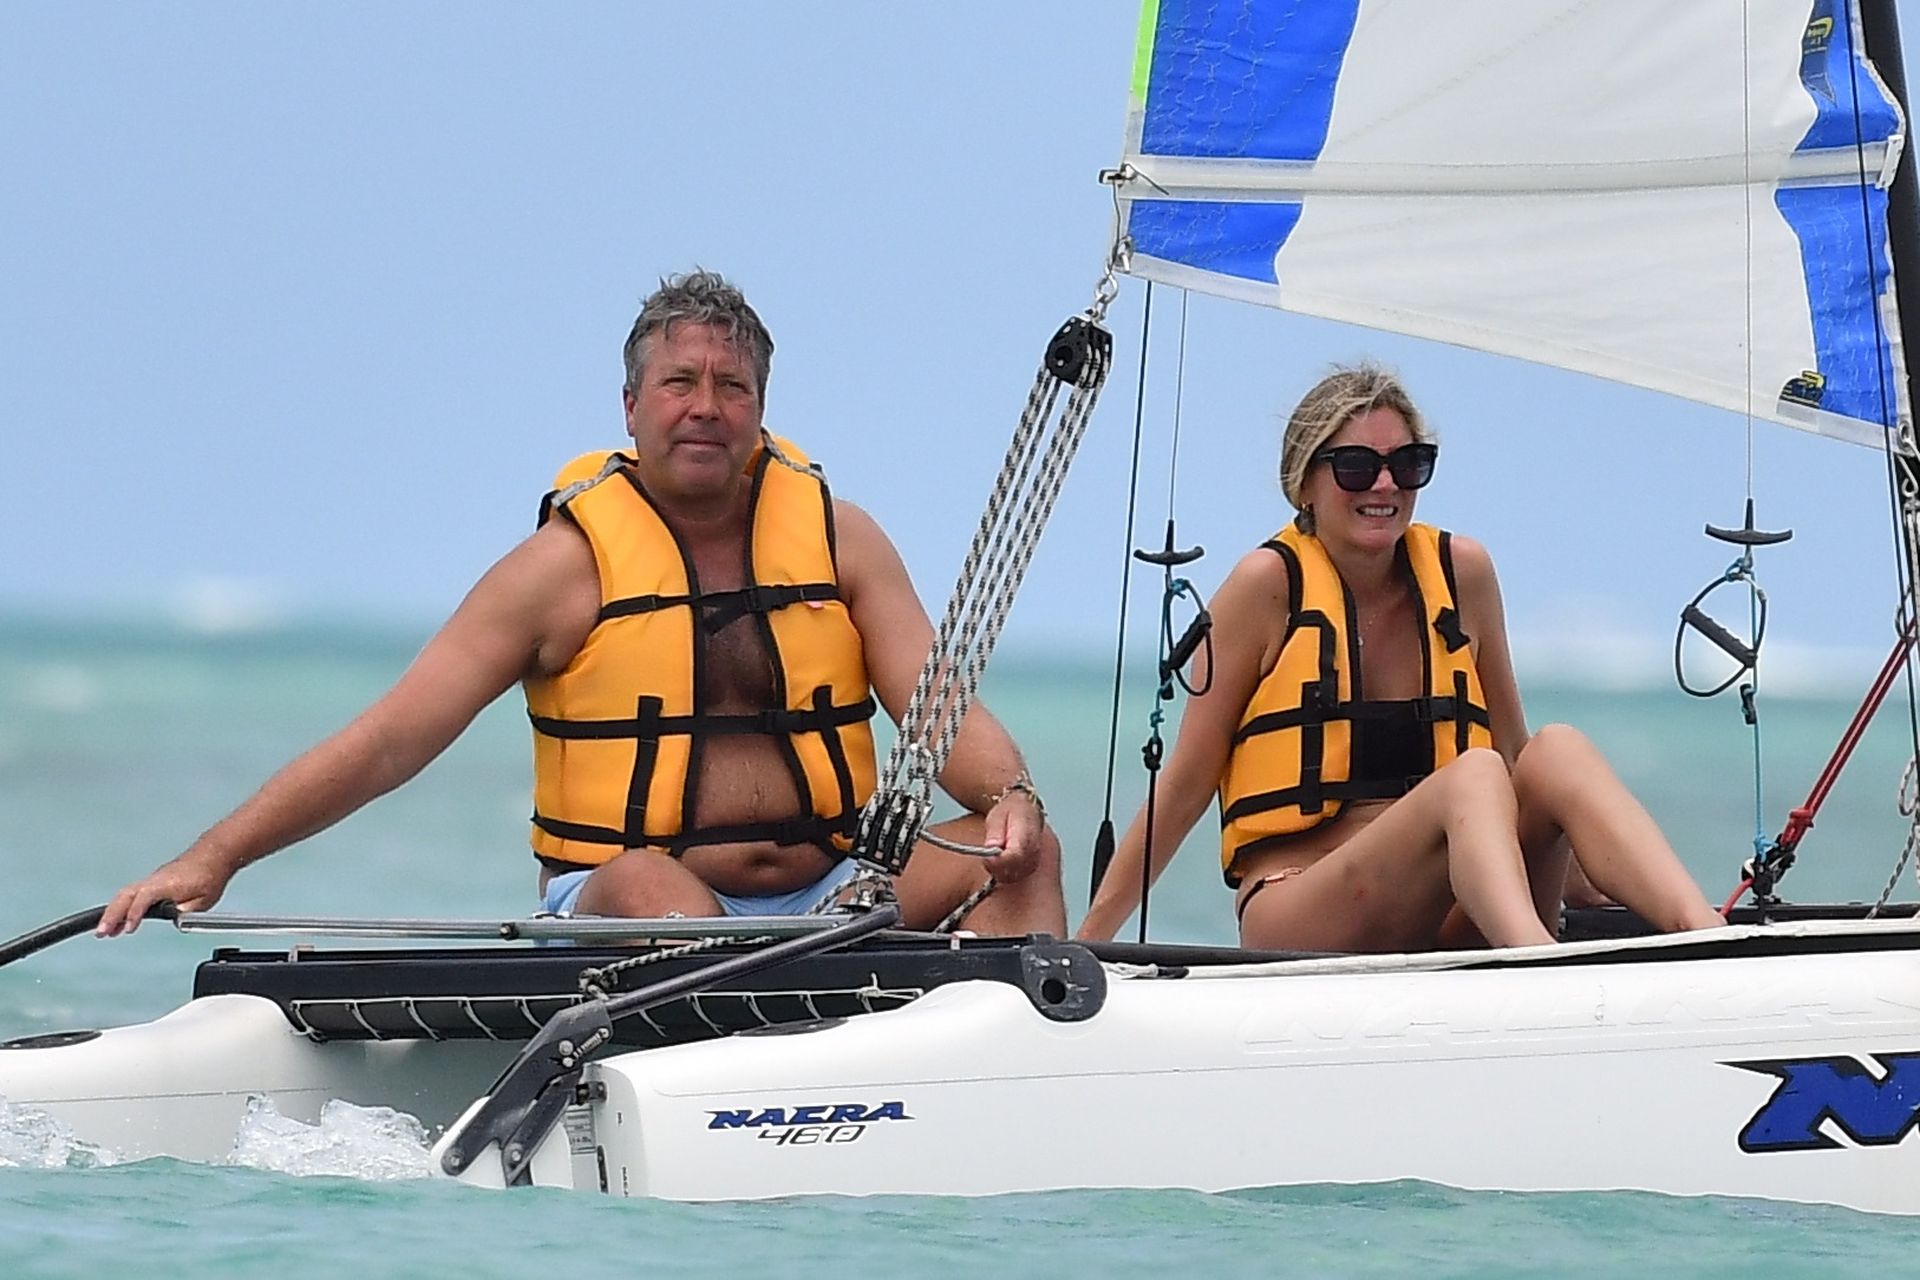 Lisa Faulkner & John Torode Seen Enjoying Their Honeymoon in Mauritius (42 Photos)